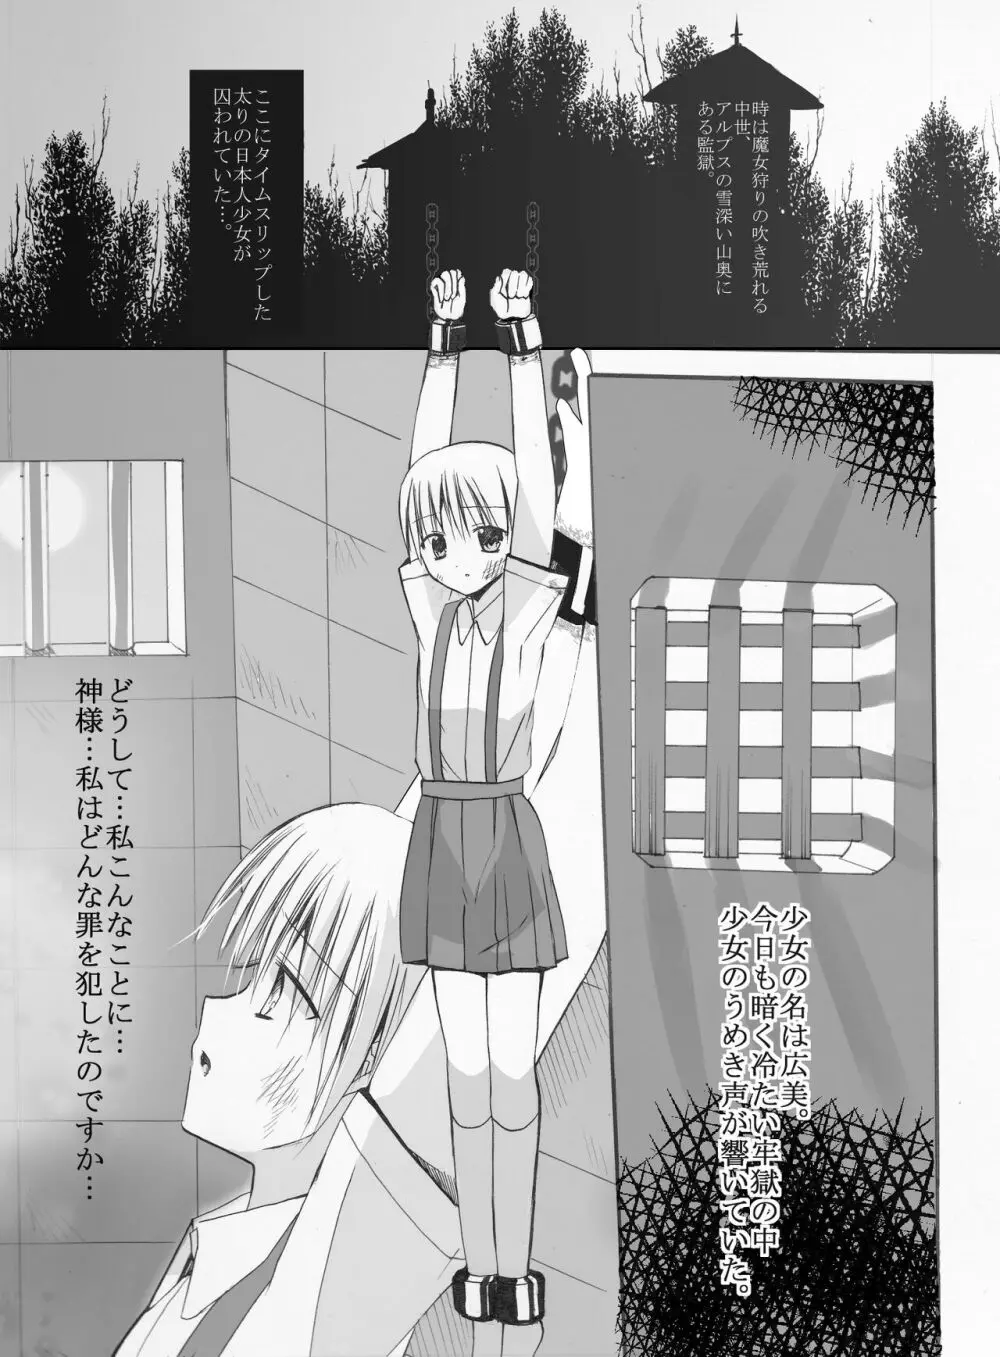 魔女狩りに囚われた少女・広美 漫画版 第一話 3ページ